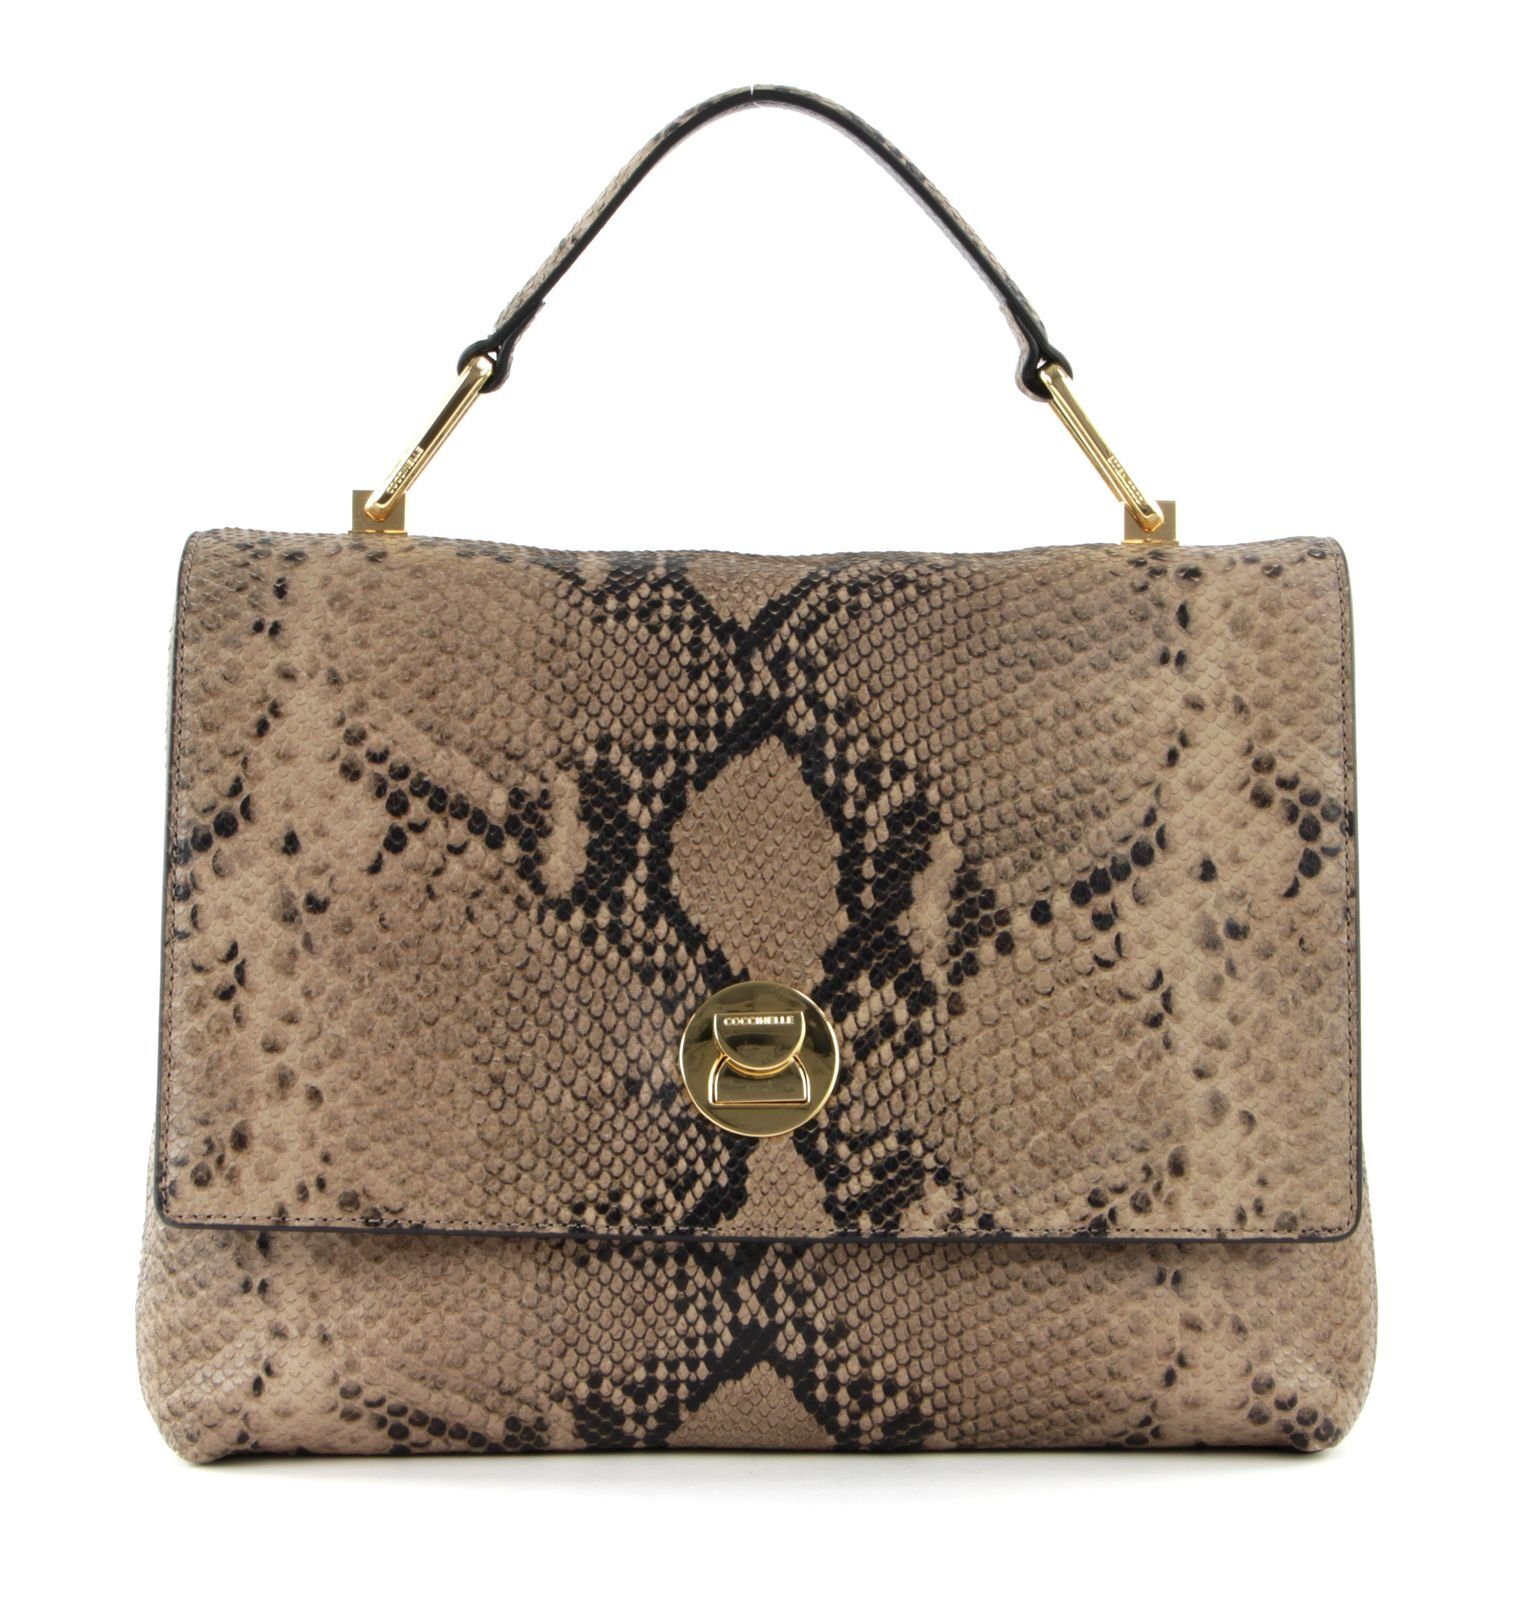 COCCINELLE Handtasche »Liya Python« online kaufen | OTTO